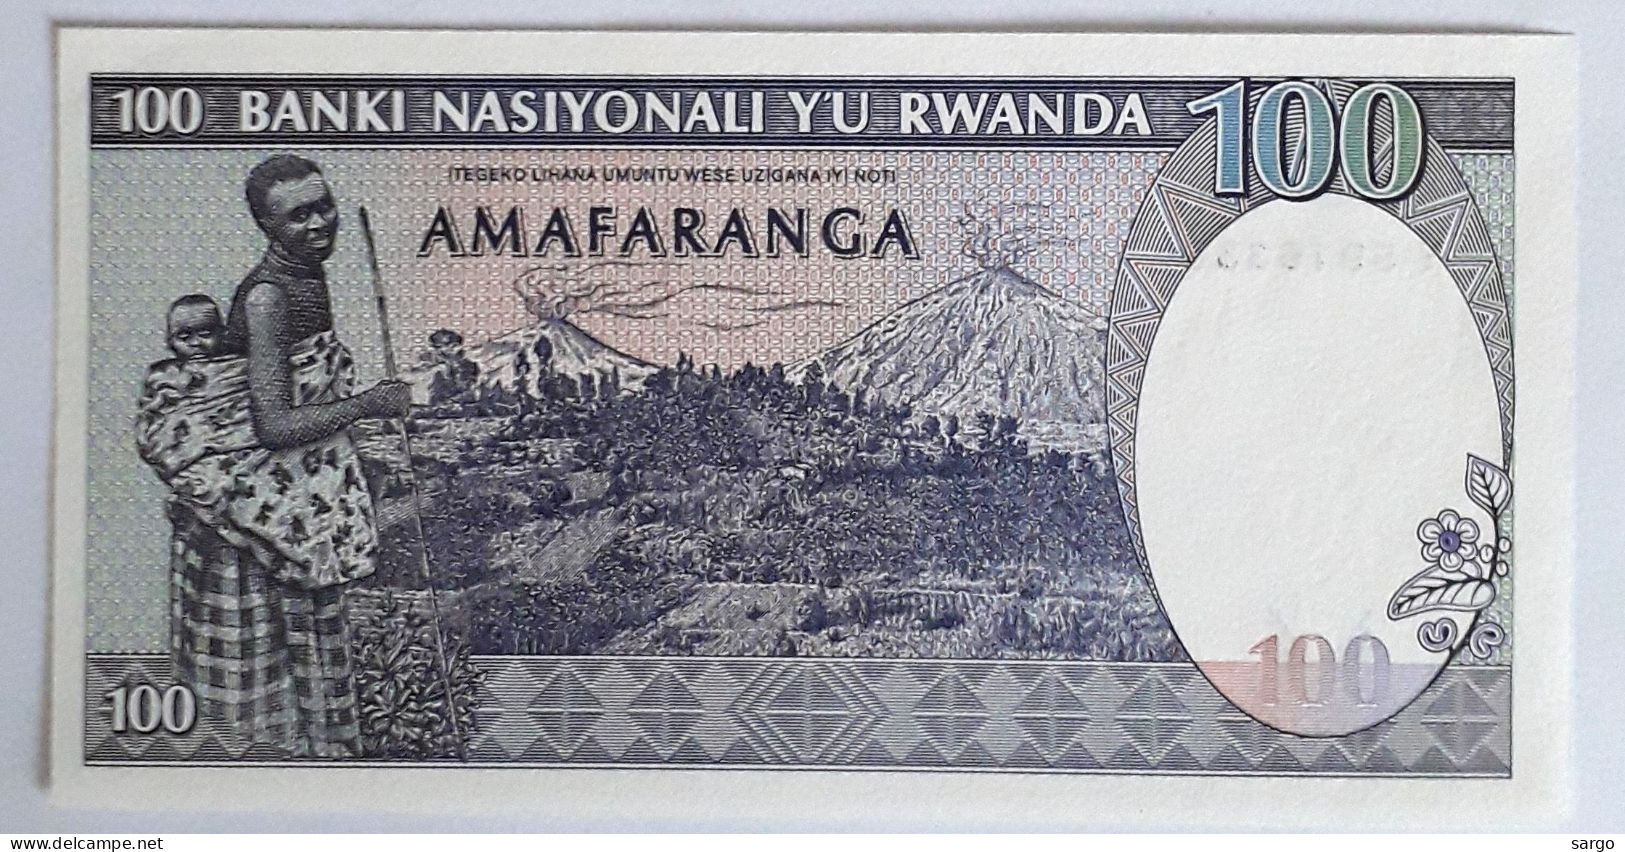 RWANDA - 100 FRANCS - 1989 - UNC - P 19 - BANKNOTES - PAPER MONEY - CARTAMONETA - - Ruanda